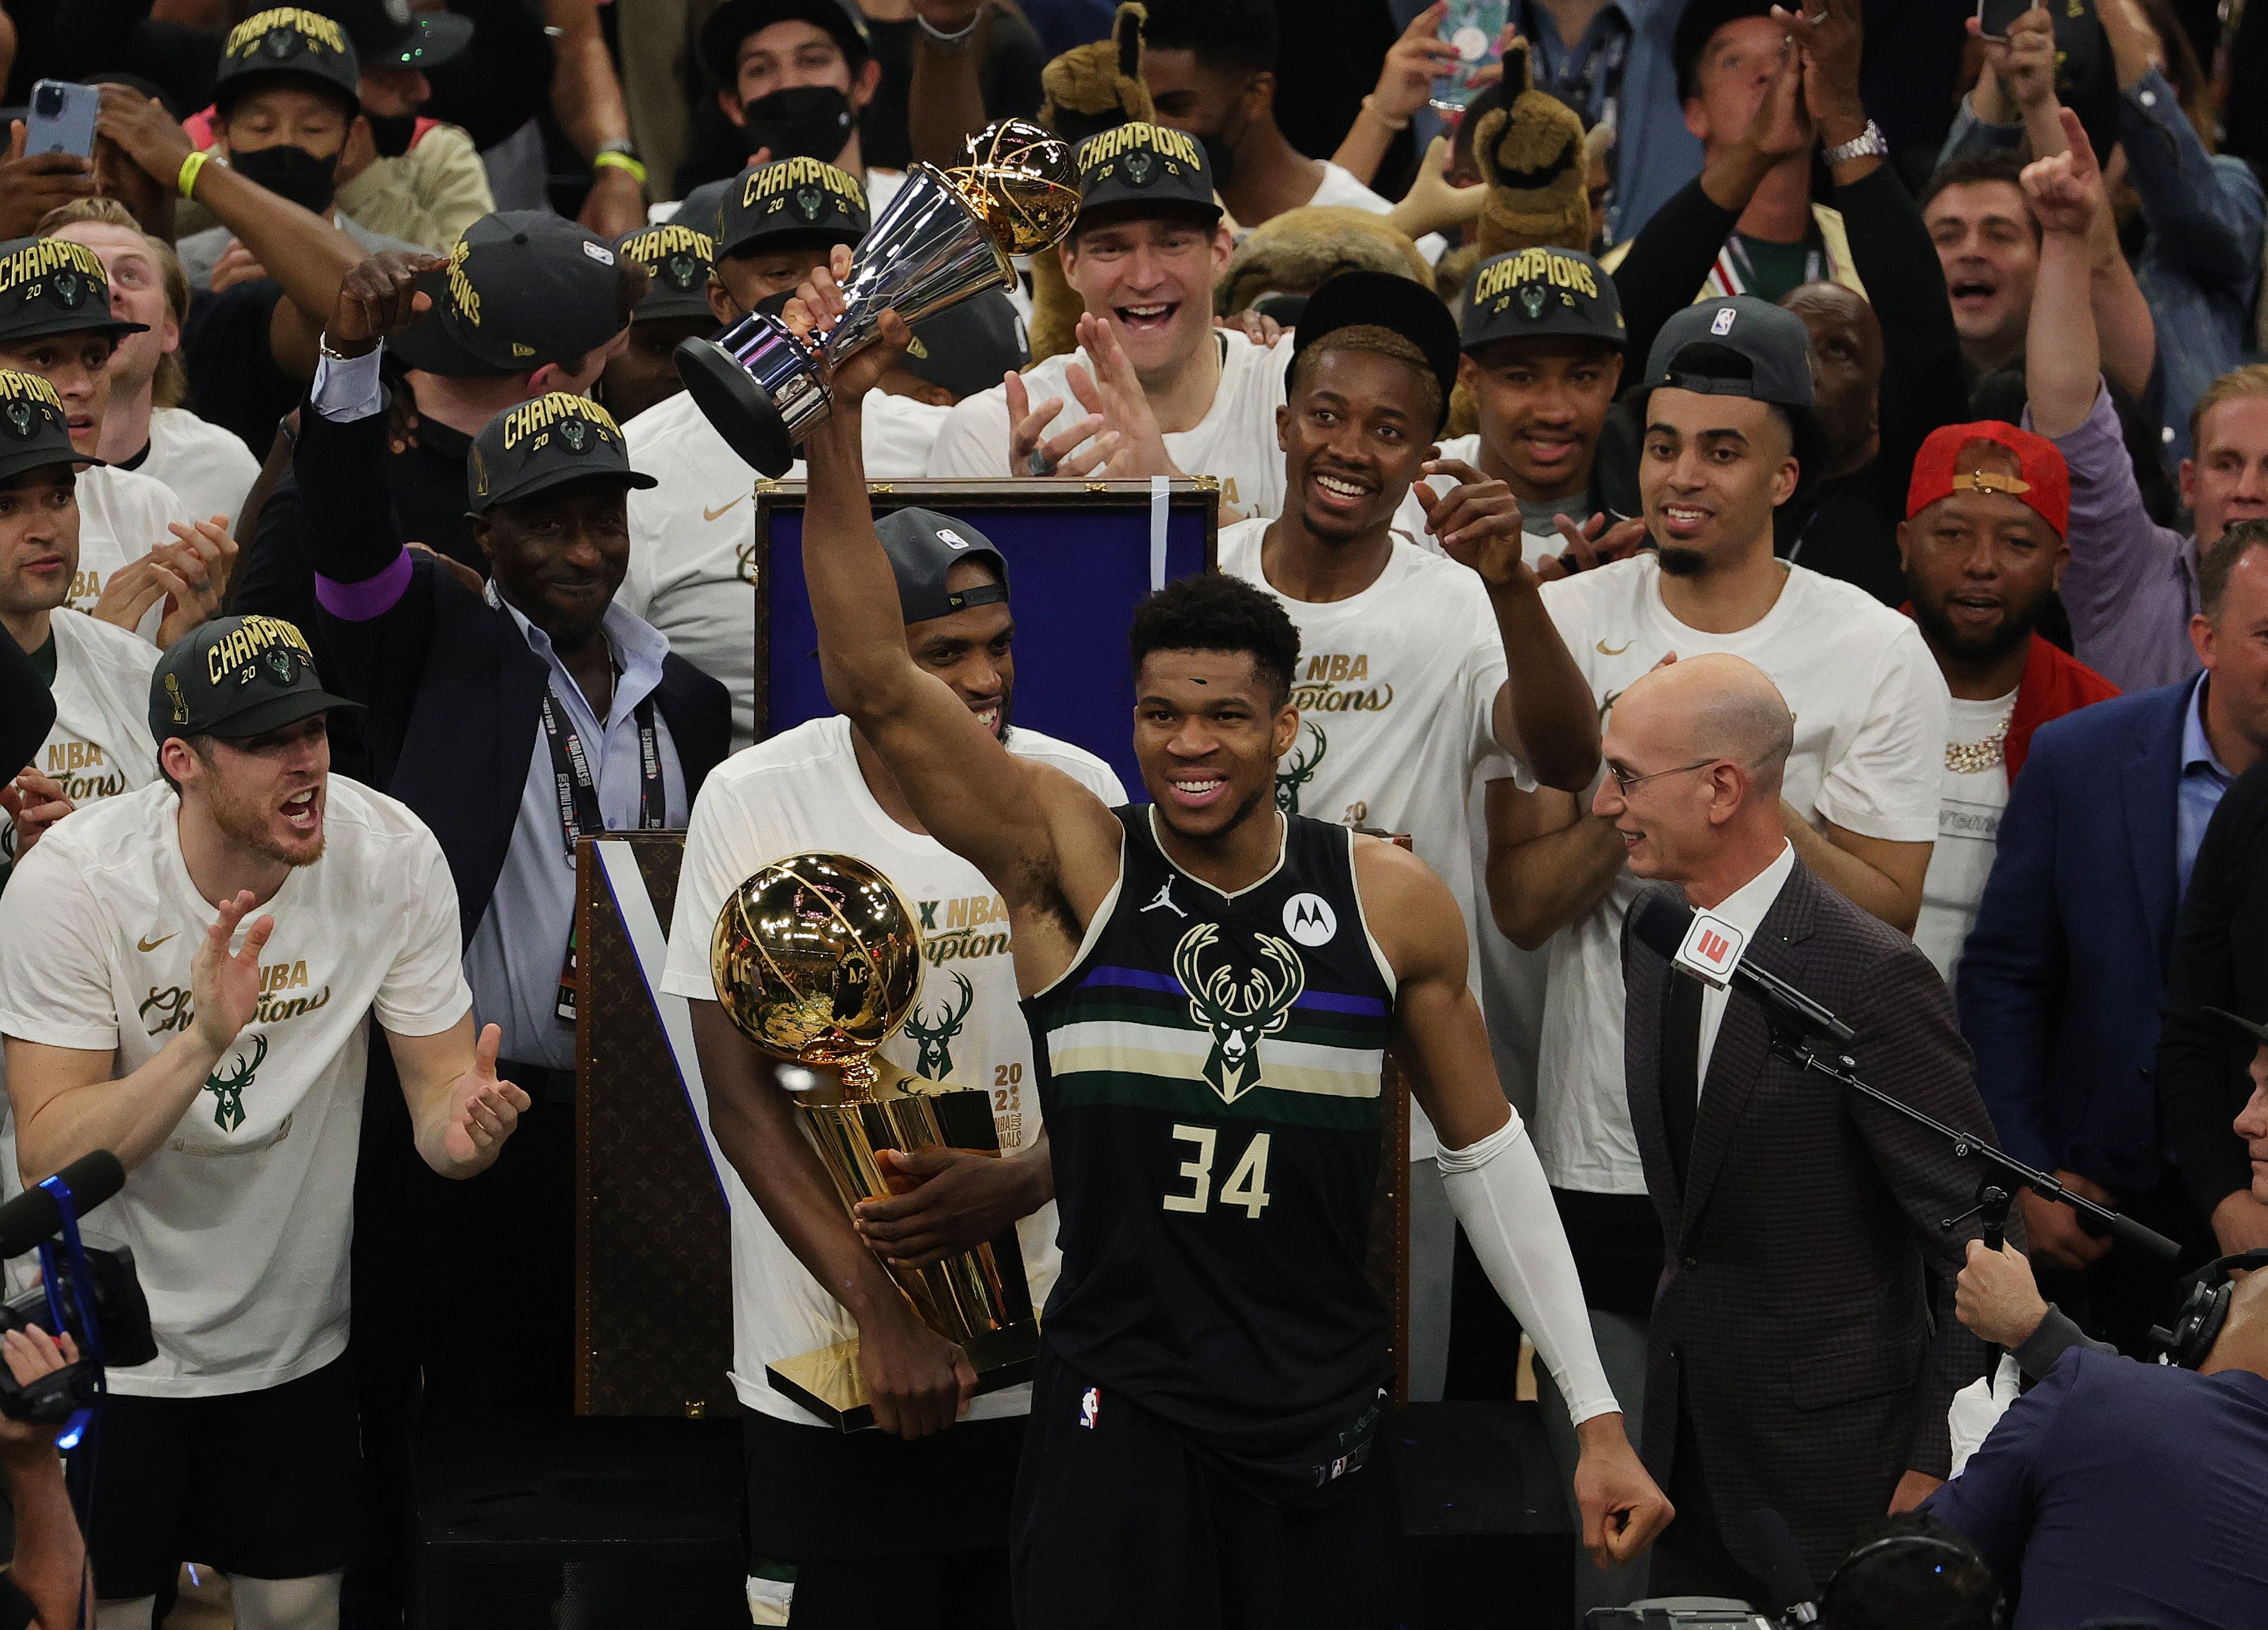 El griego Giannis Antetokounmpo #34 de los Milwaukee Bucks celebra el campeonato que ganaron ante los Suns en la NBA. Foto Prensa Libre: AFP